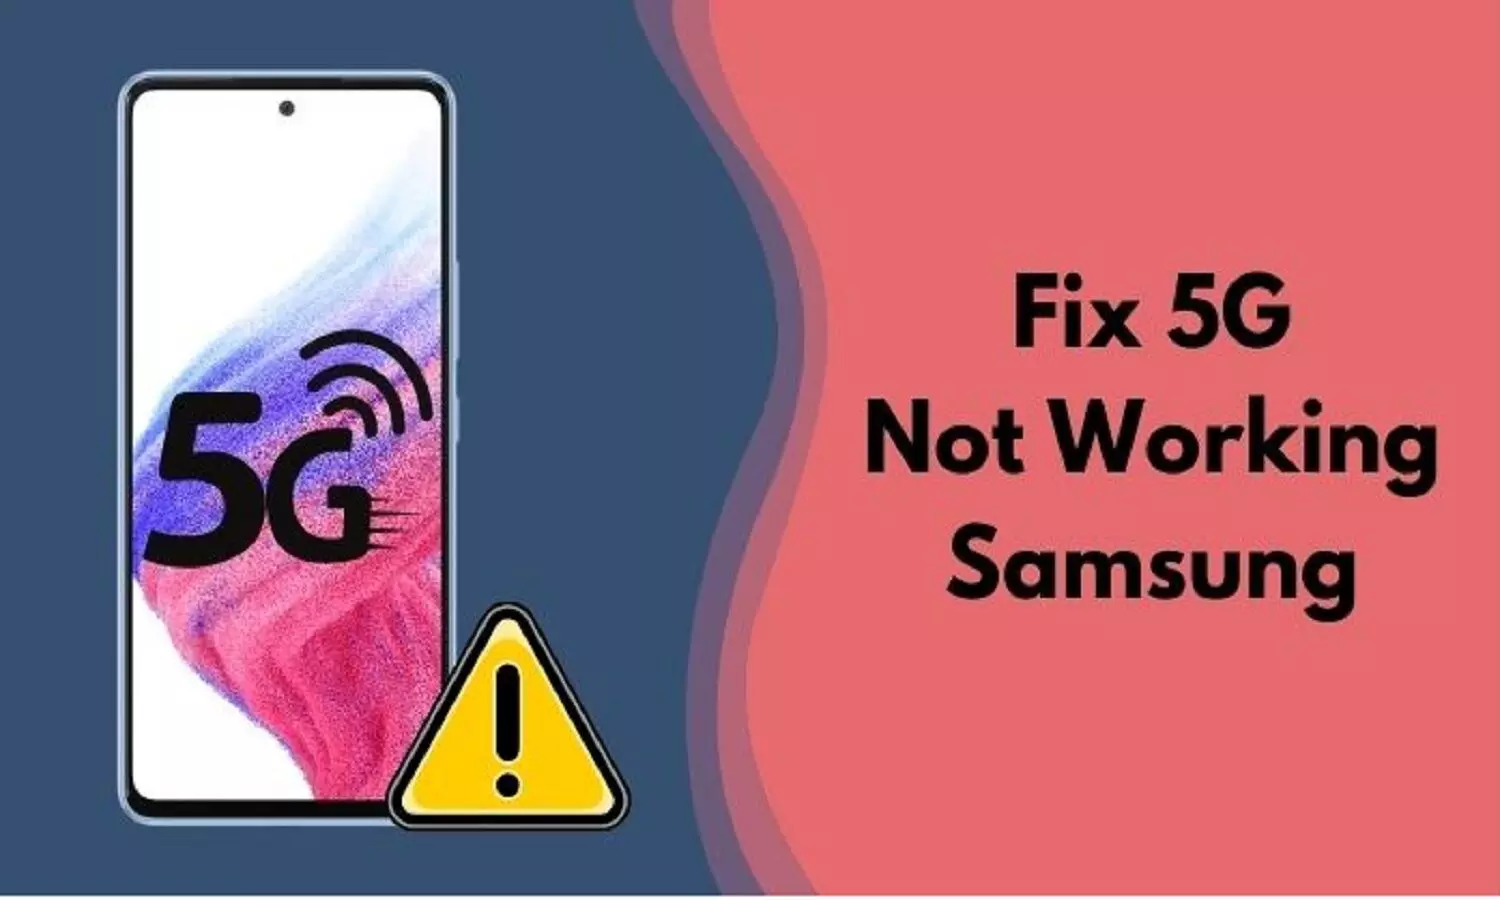 5G Is Not Working In Samsung 5G Smartphone: सैमसंग के 5G मोबाइल में भी 5G नहीं चल रहा?